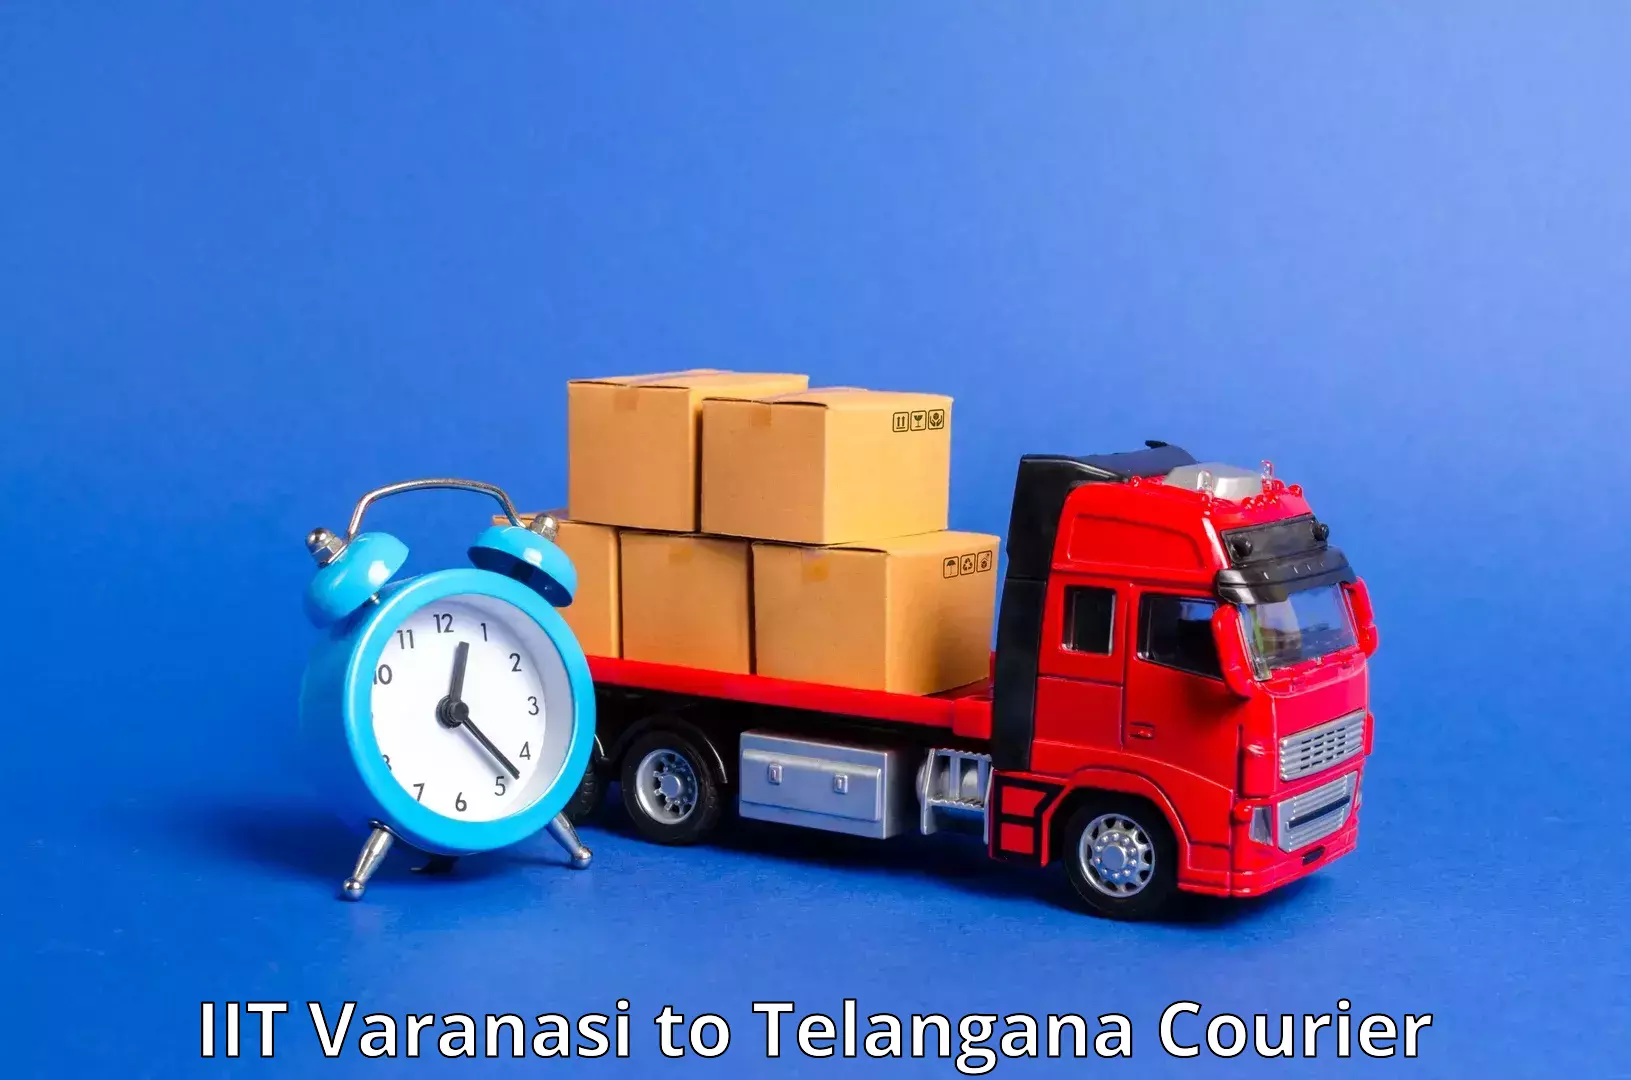 On-demand shipping options in IIT Varanasi to IIT Hyderabad